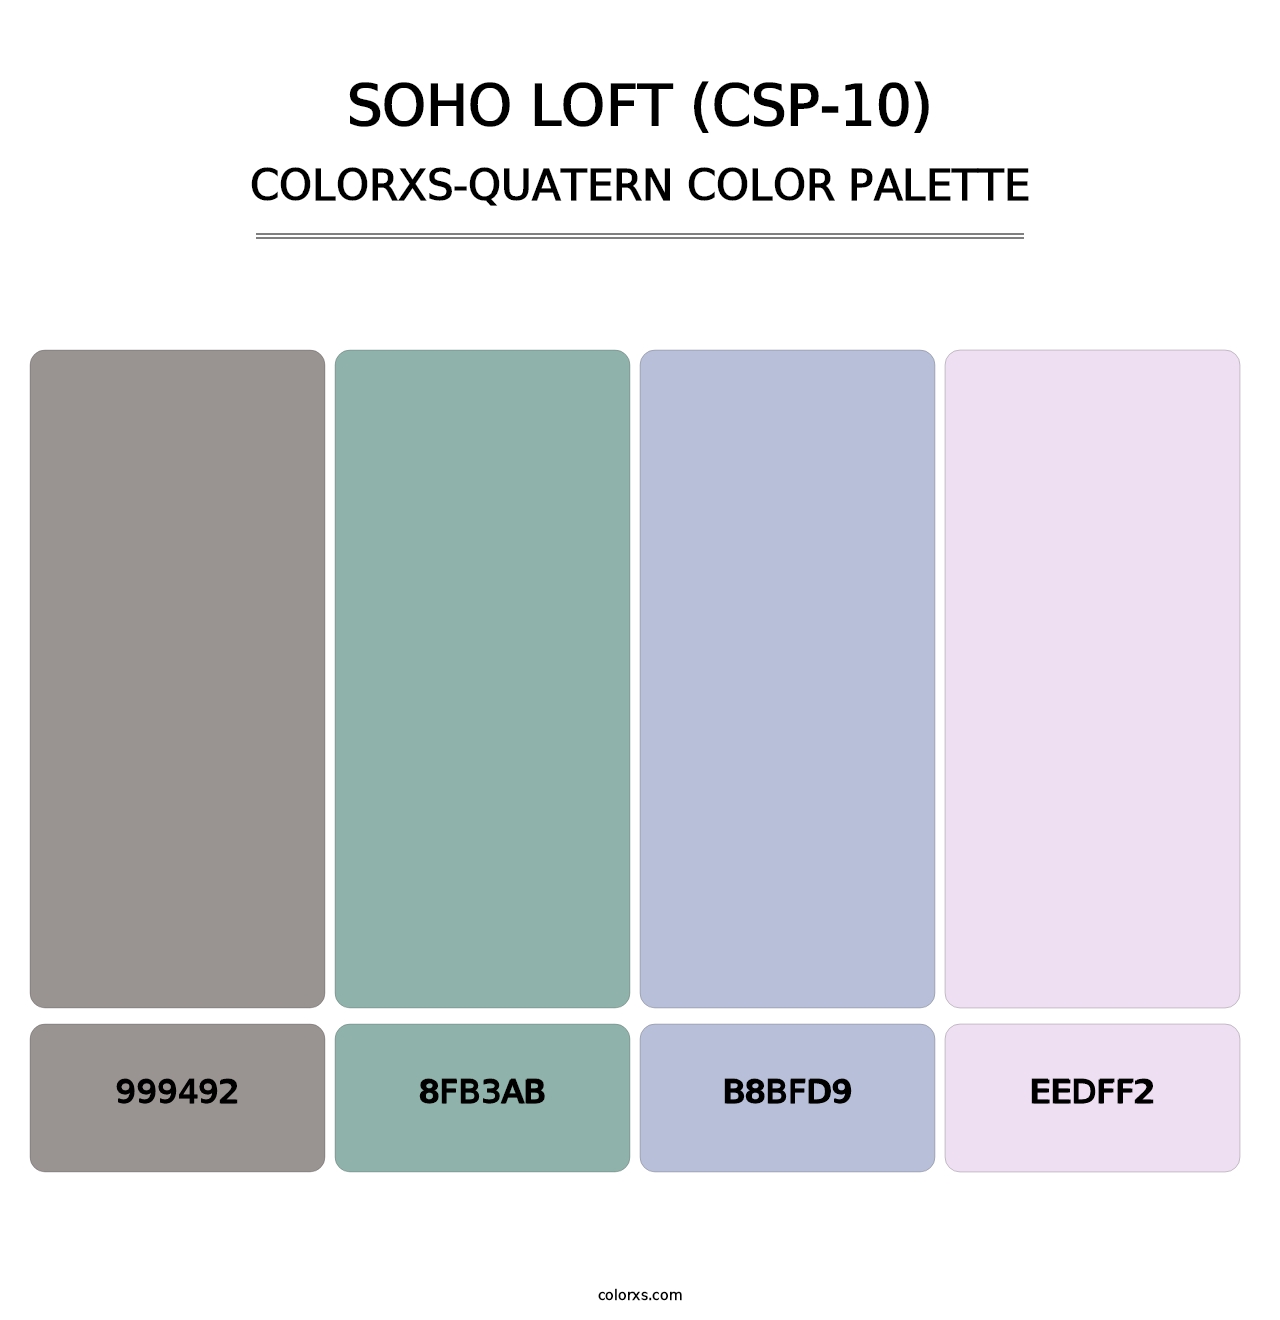 Soho Loft (CSP-10) - Colorxs Quatern Palette